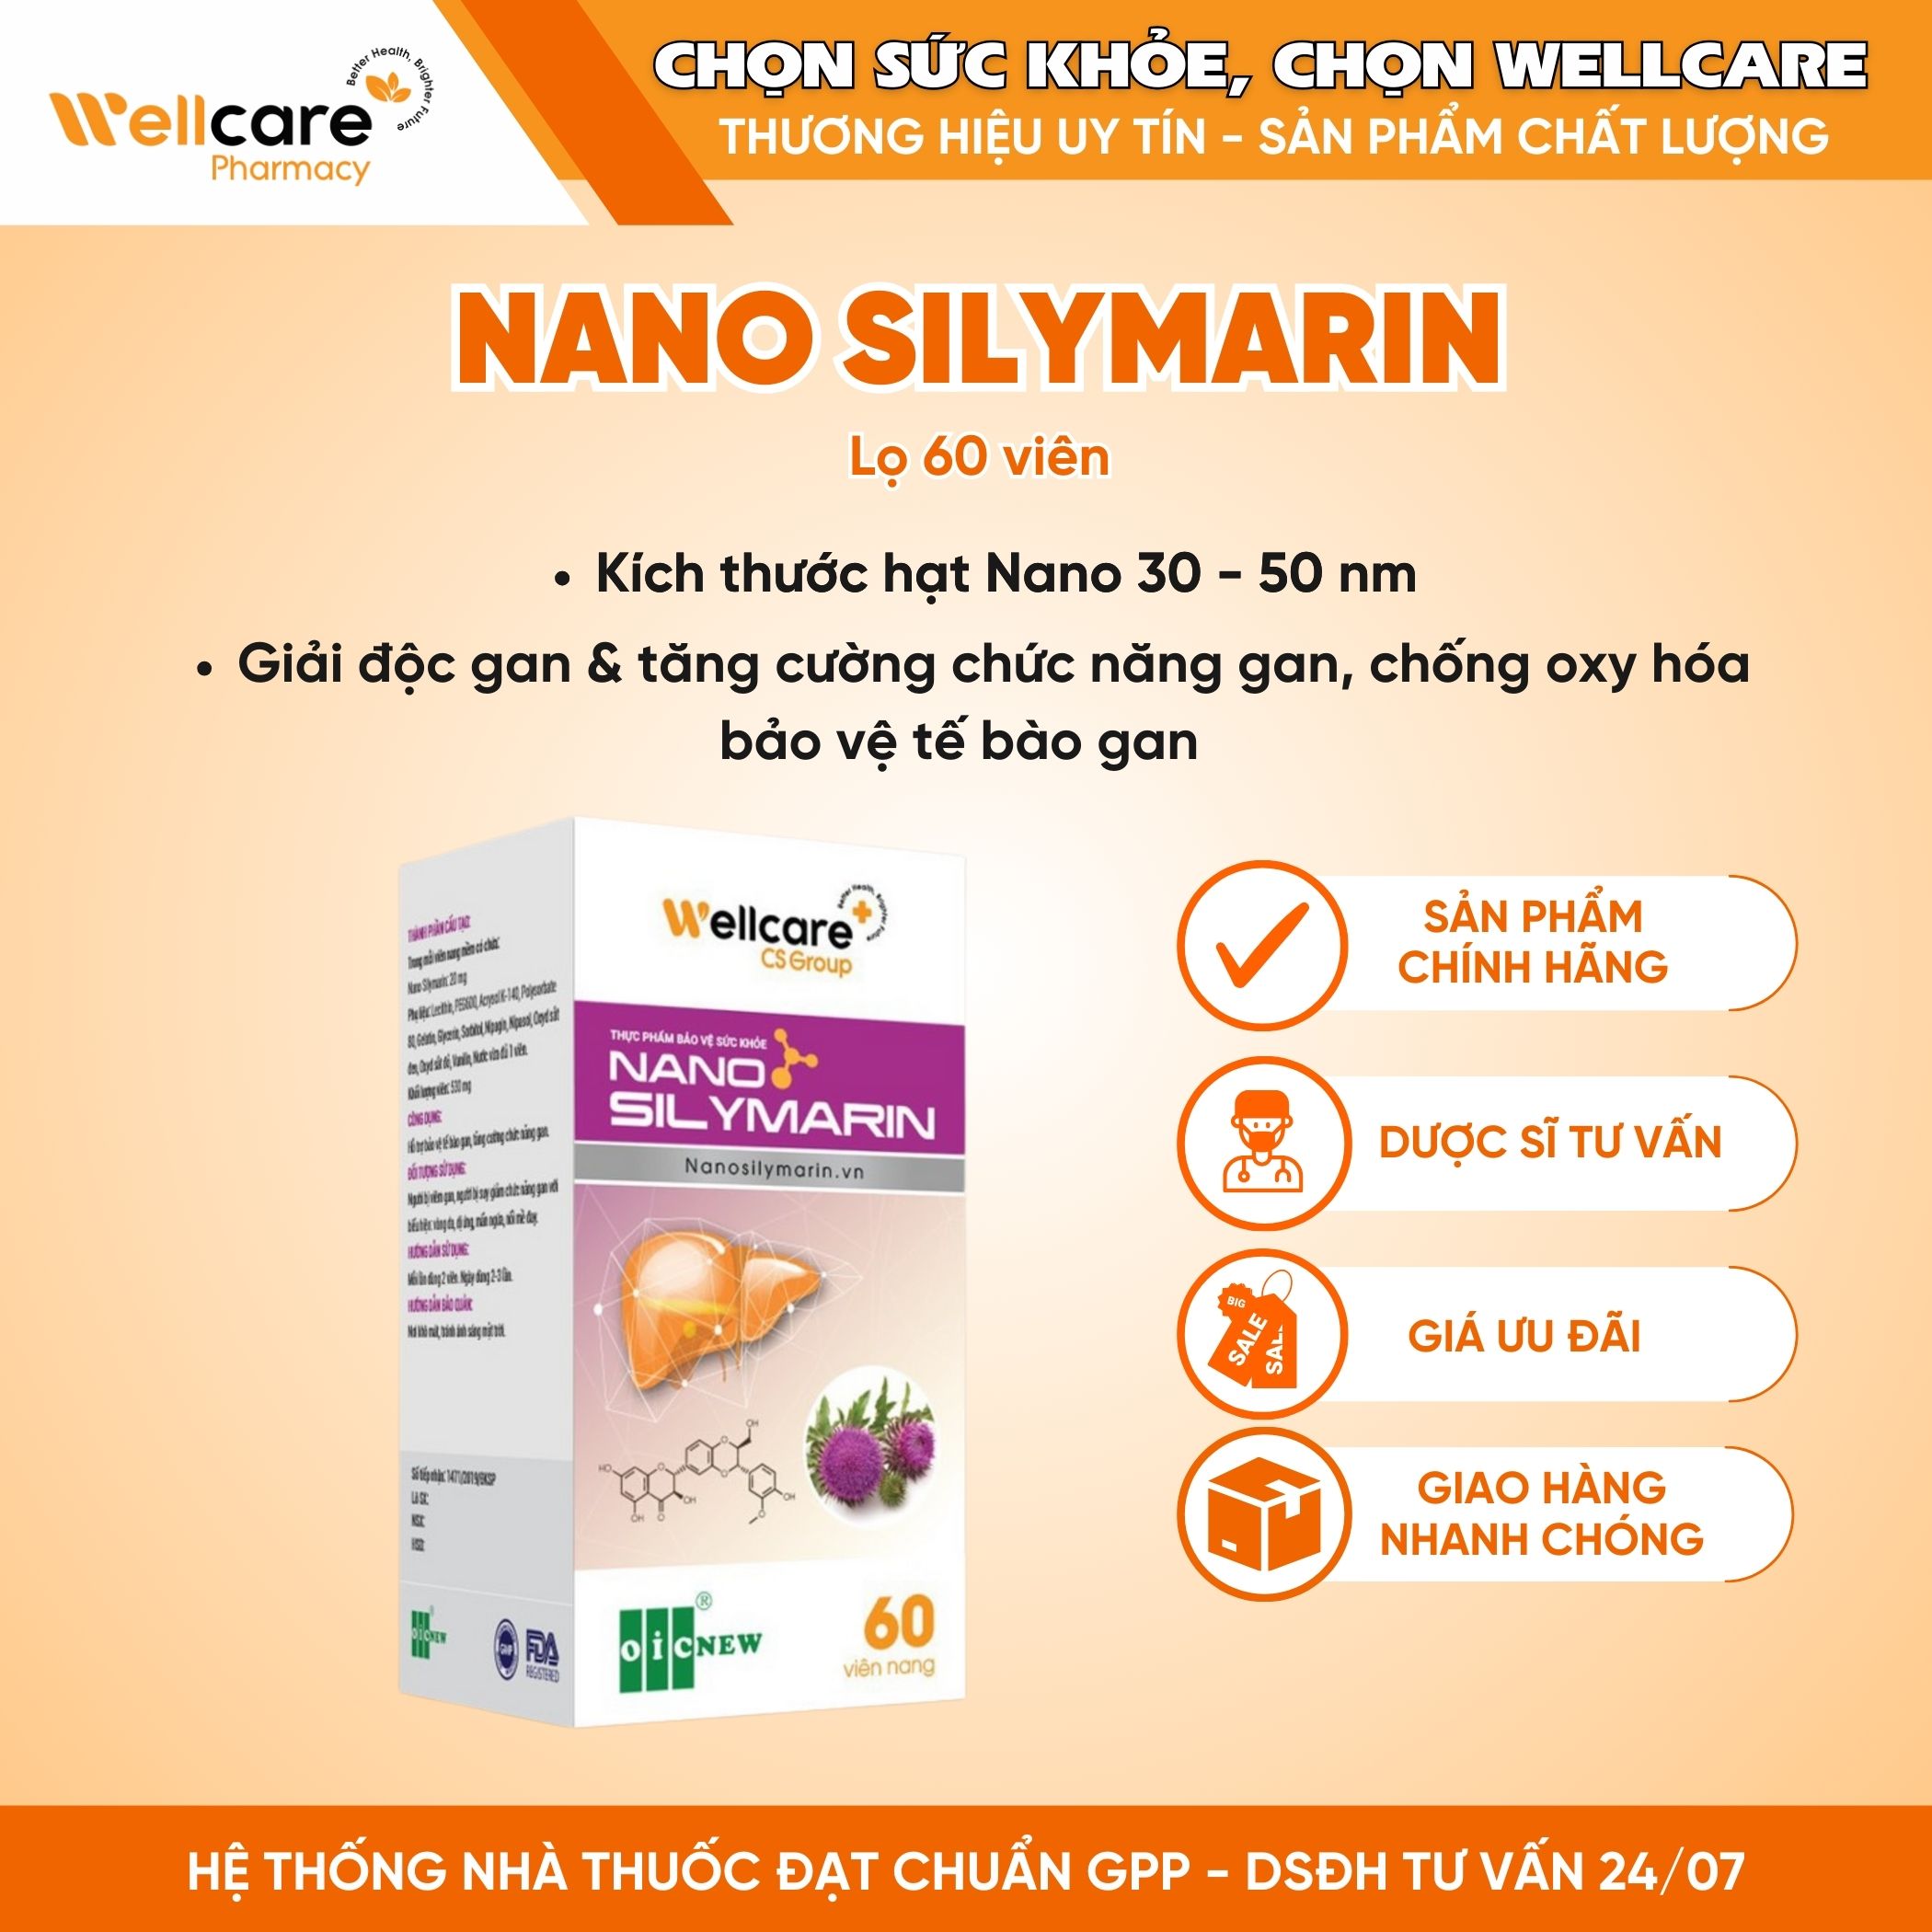 Nano Silymarin OIC NEW – Hỗ trợ bảo vệ gan, tăng cường chức năng gan (Lọ 60 viên)